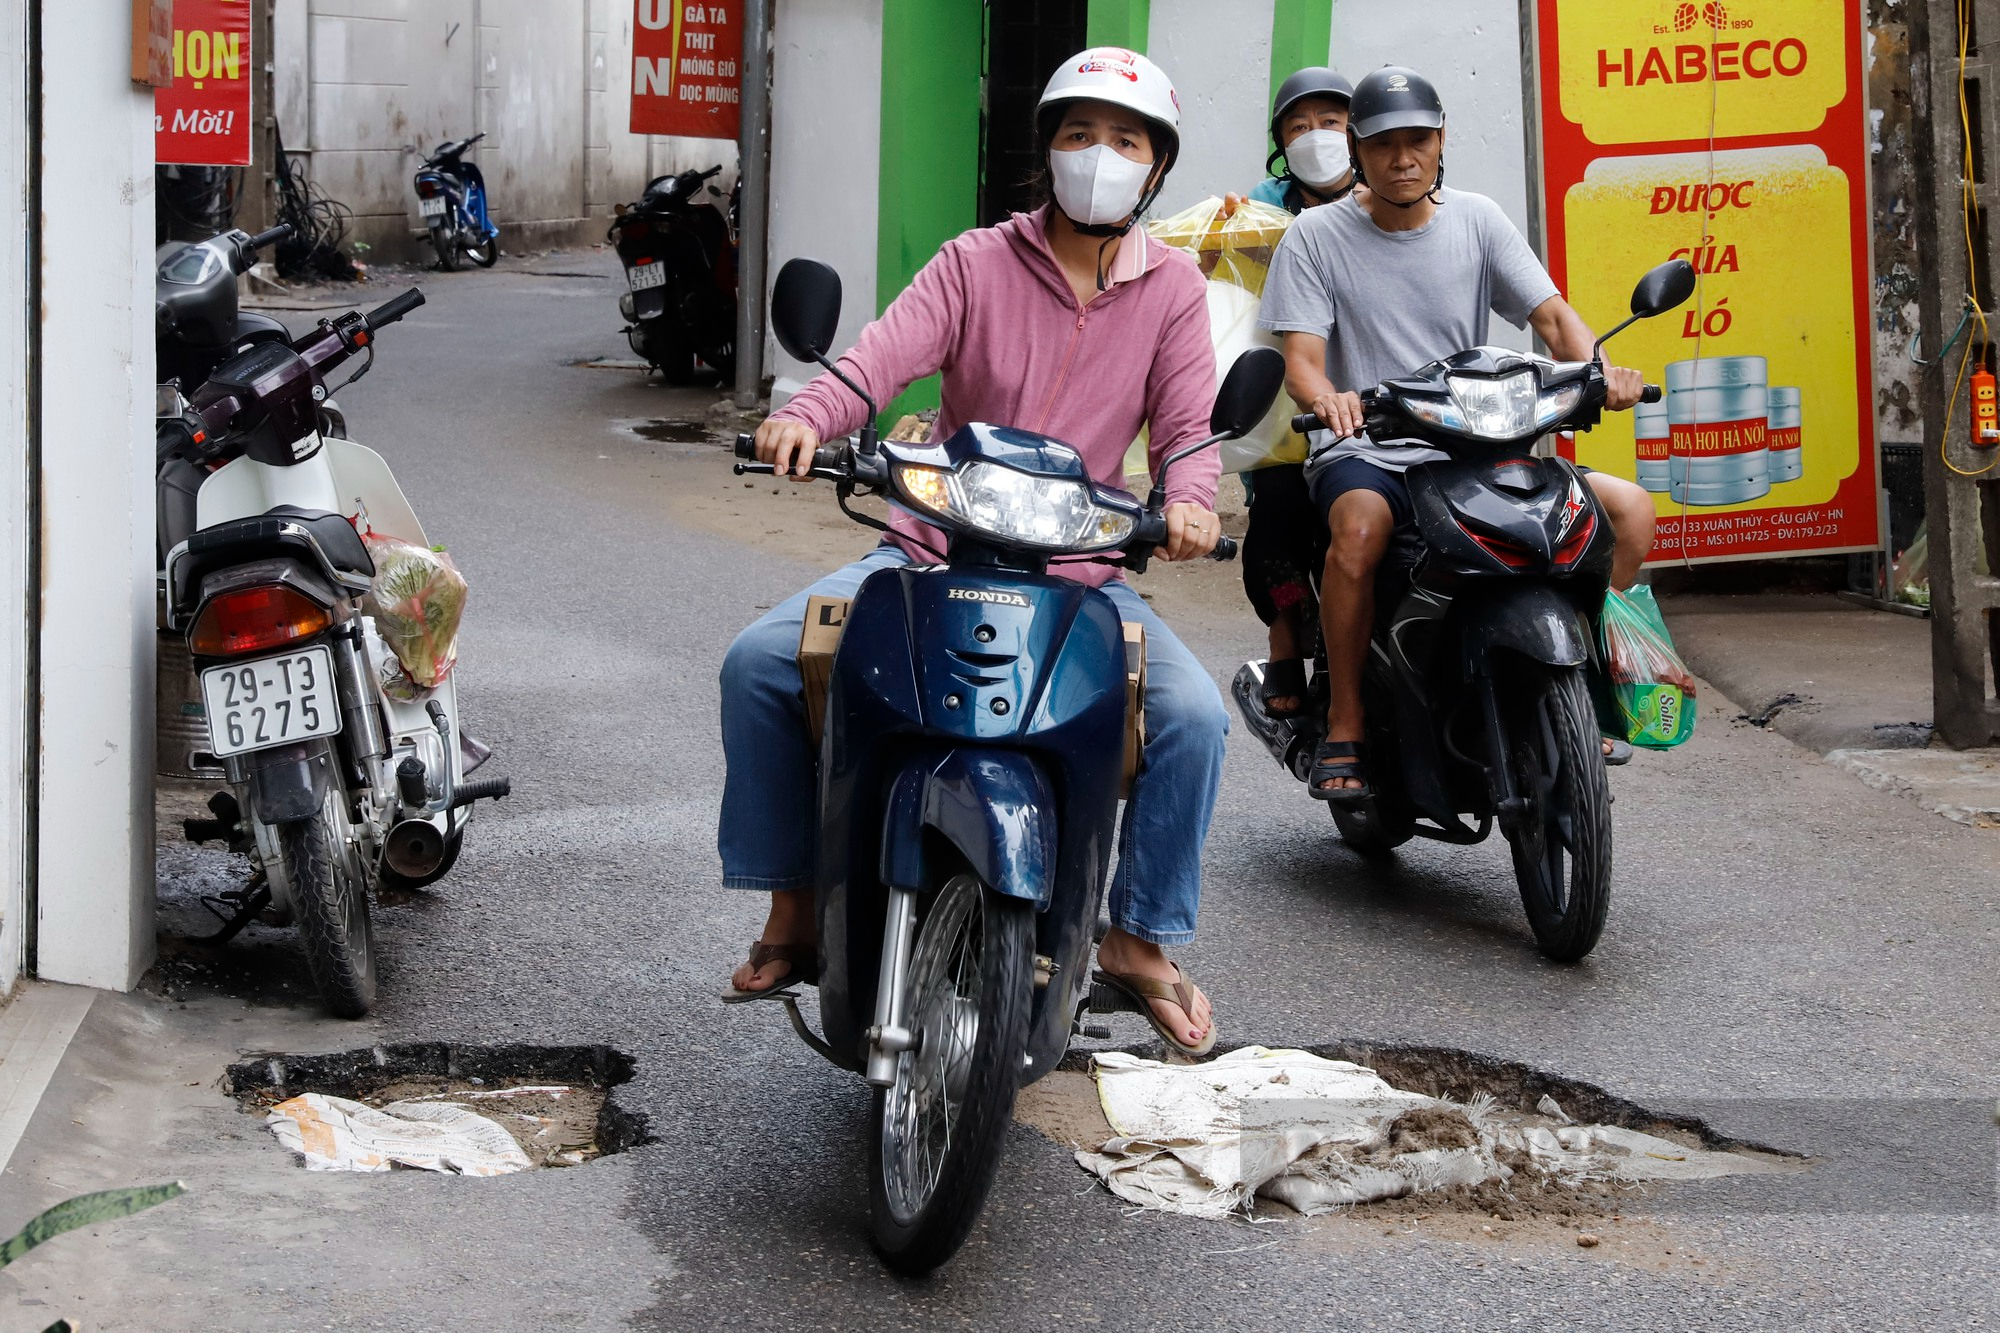 Đoạn đường dài 500m tại Hà Nội bị băm nát, chi chít những &quot;vết sẹo&quot; như bẫy người đi đường - Ảnh 4.